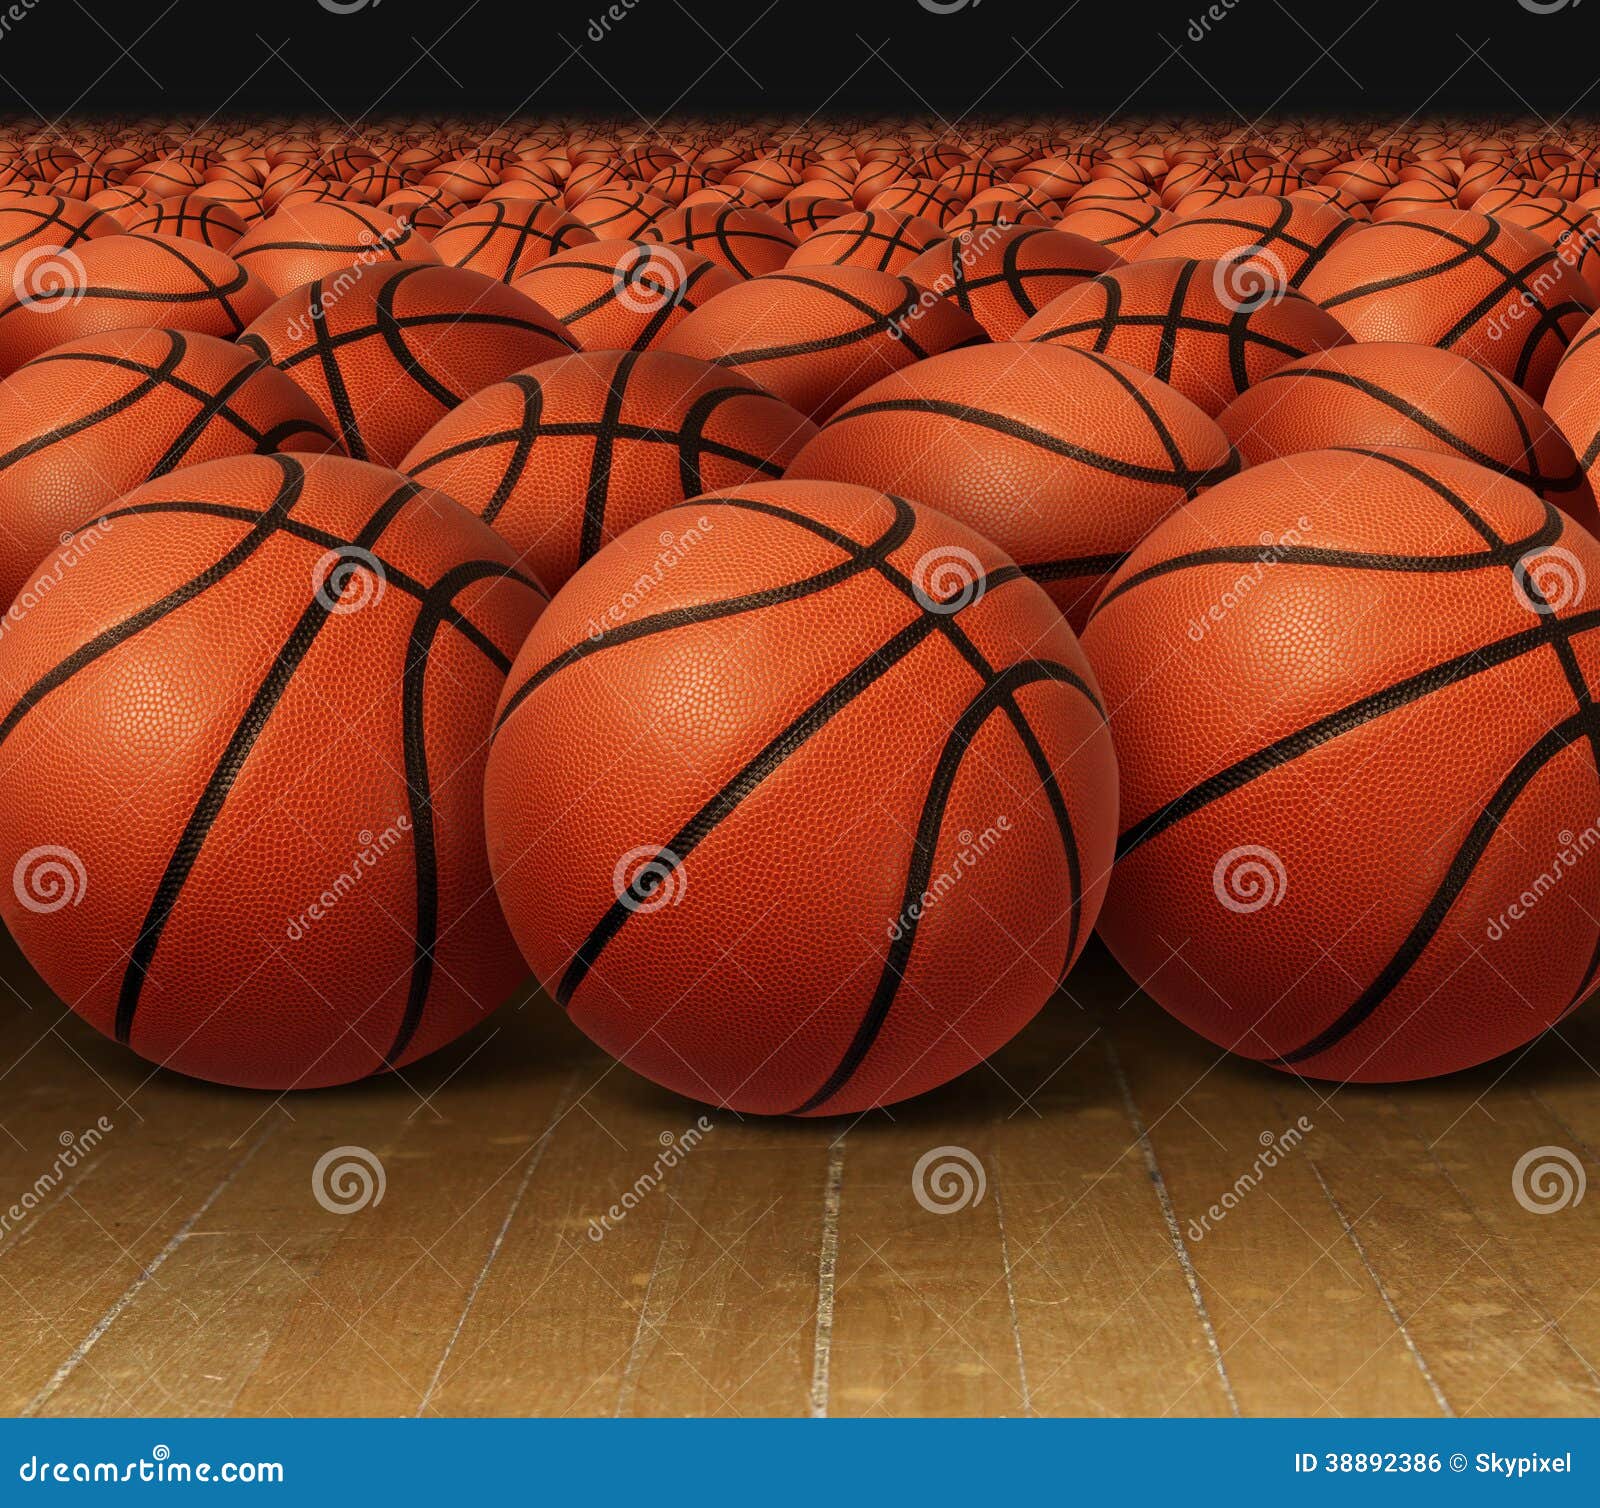 Basketball Group 15